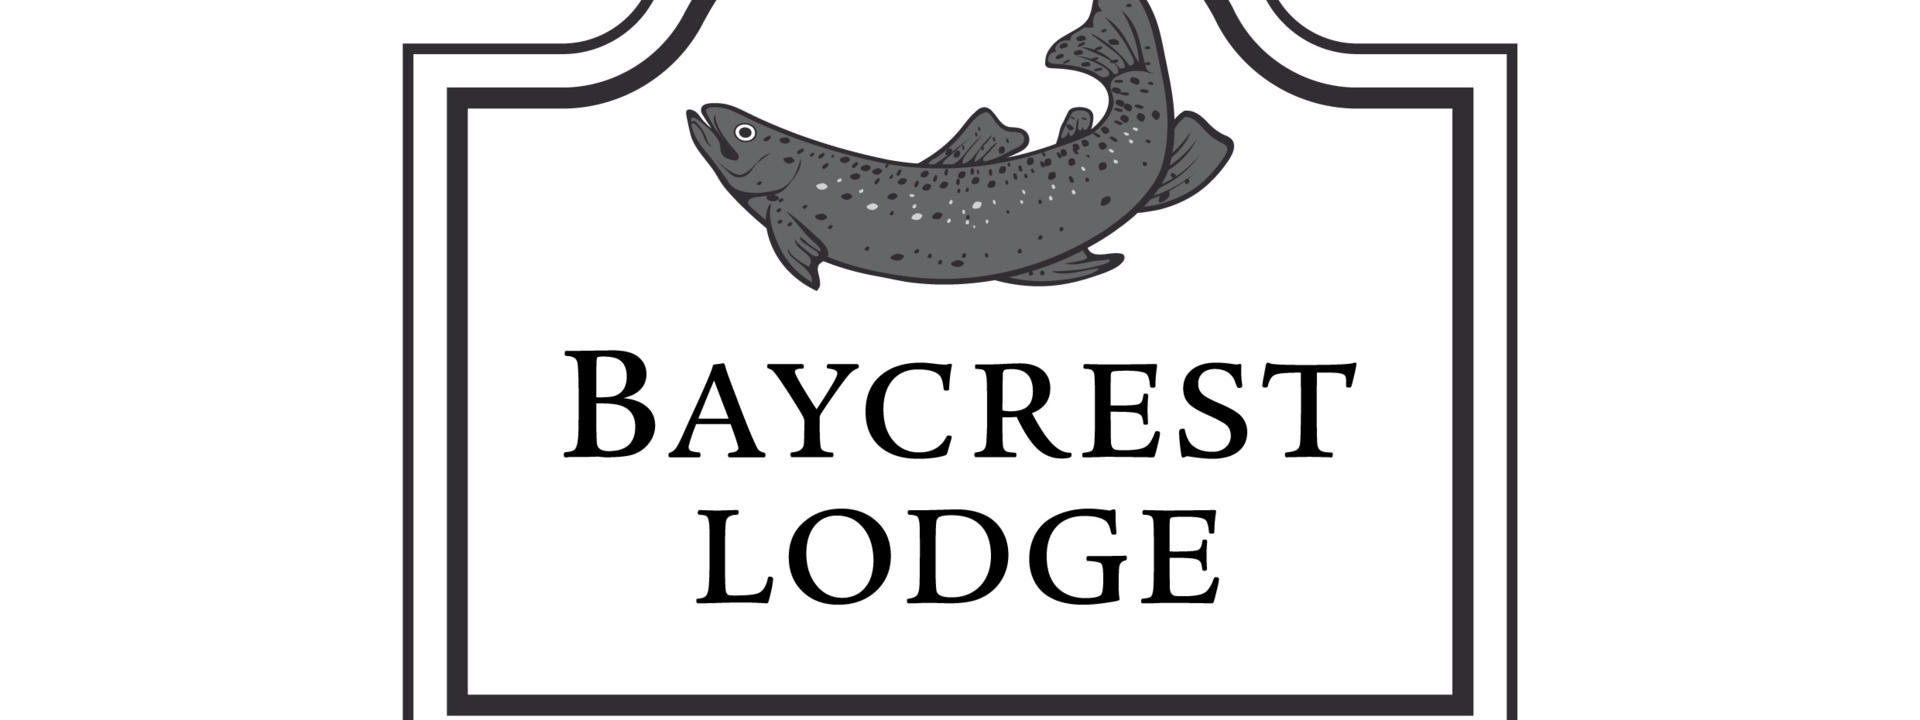 baycrest-lodge-trout-logo-rgb.jpg